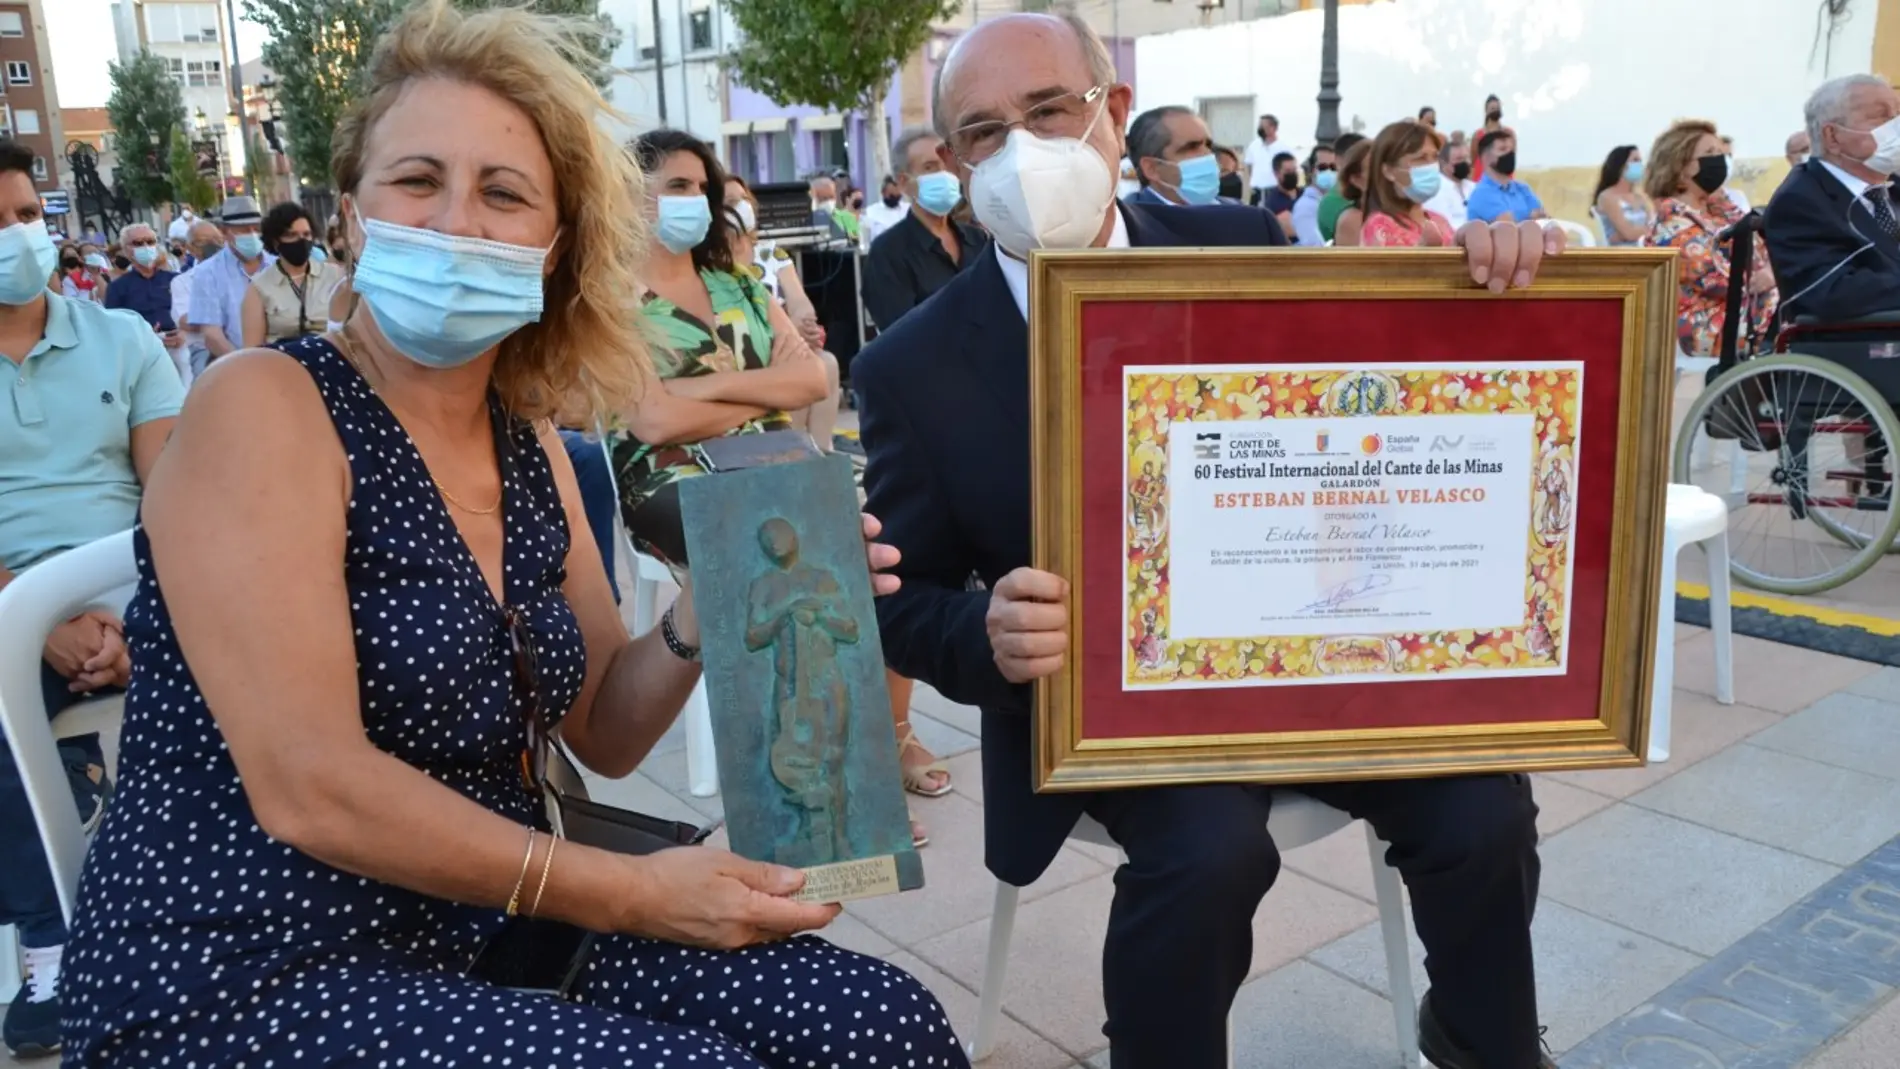 El ayuntamiento de Rojales recibe el premio “Esteban Bernal Velasco” del Festival Internacional del Cante de las Minas de la Unión 